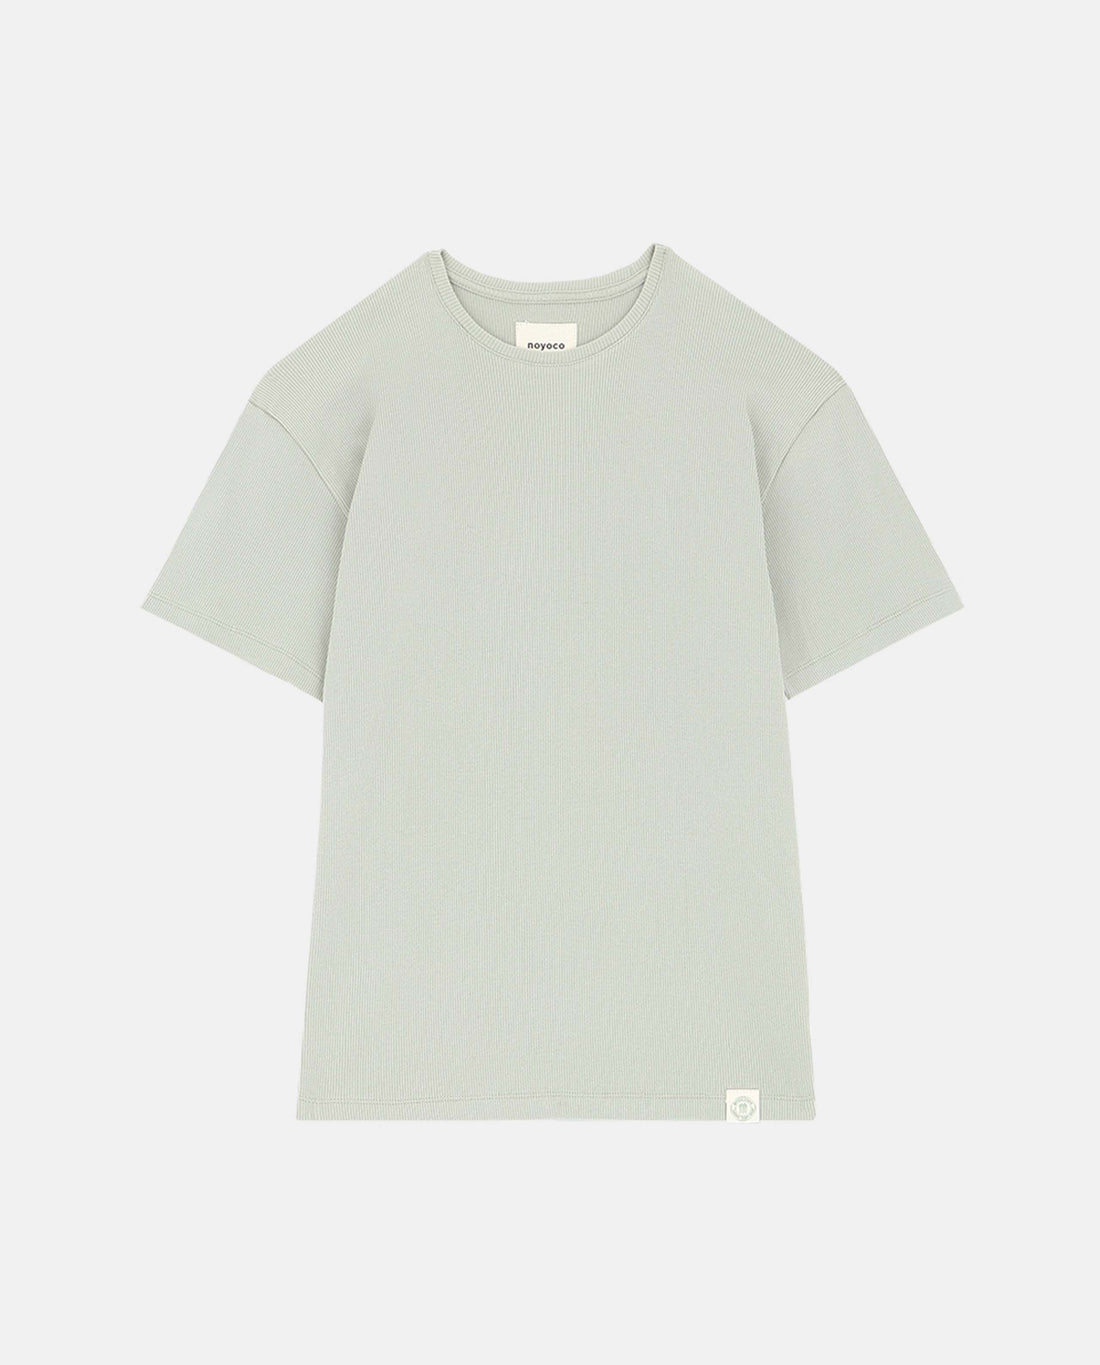 marché commun noyoco femme t-shirt manches courtes gobi coton biologique côtelé vert sauge